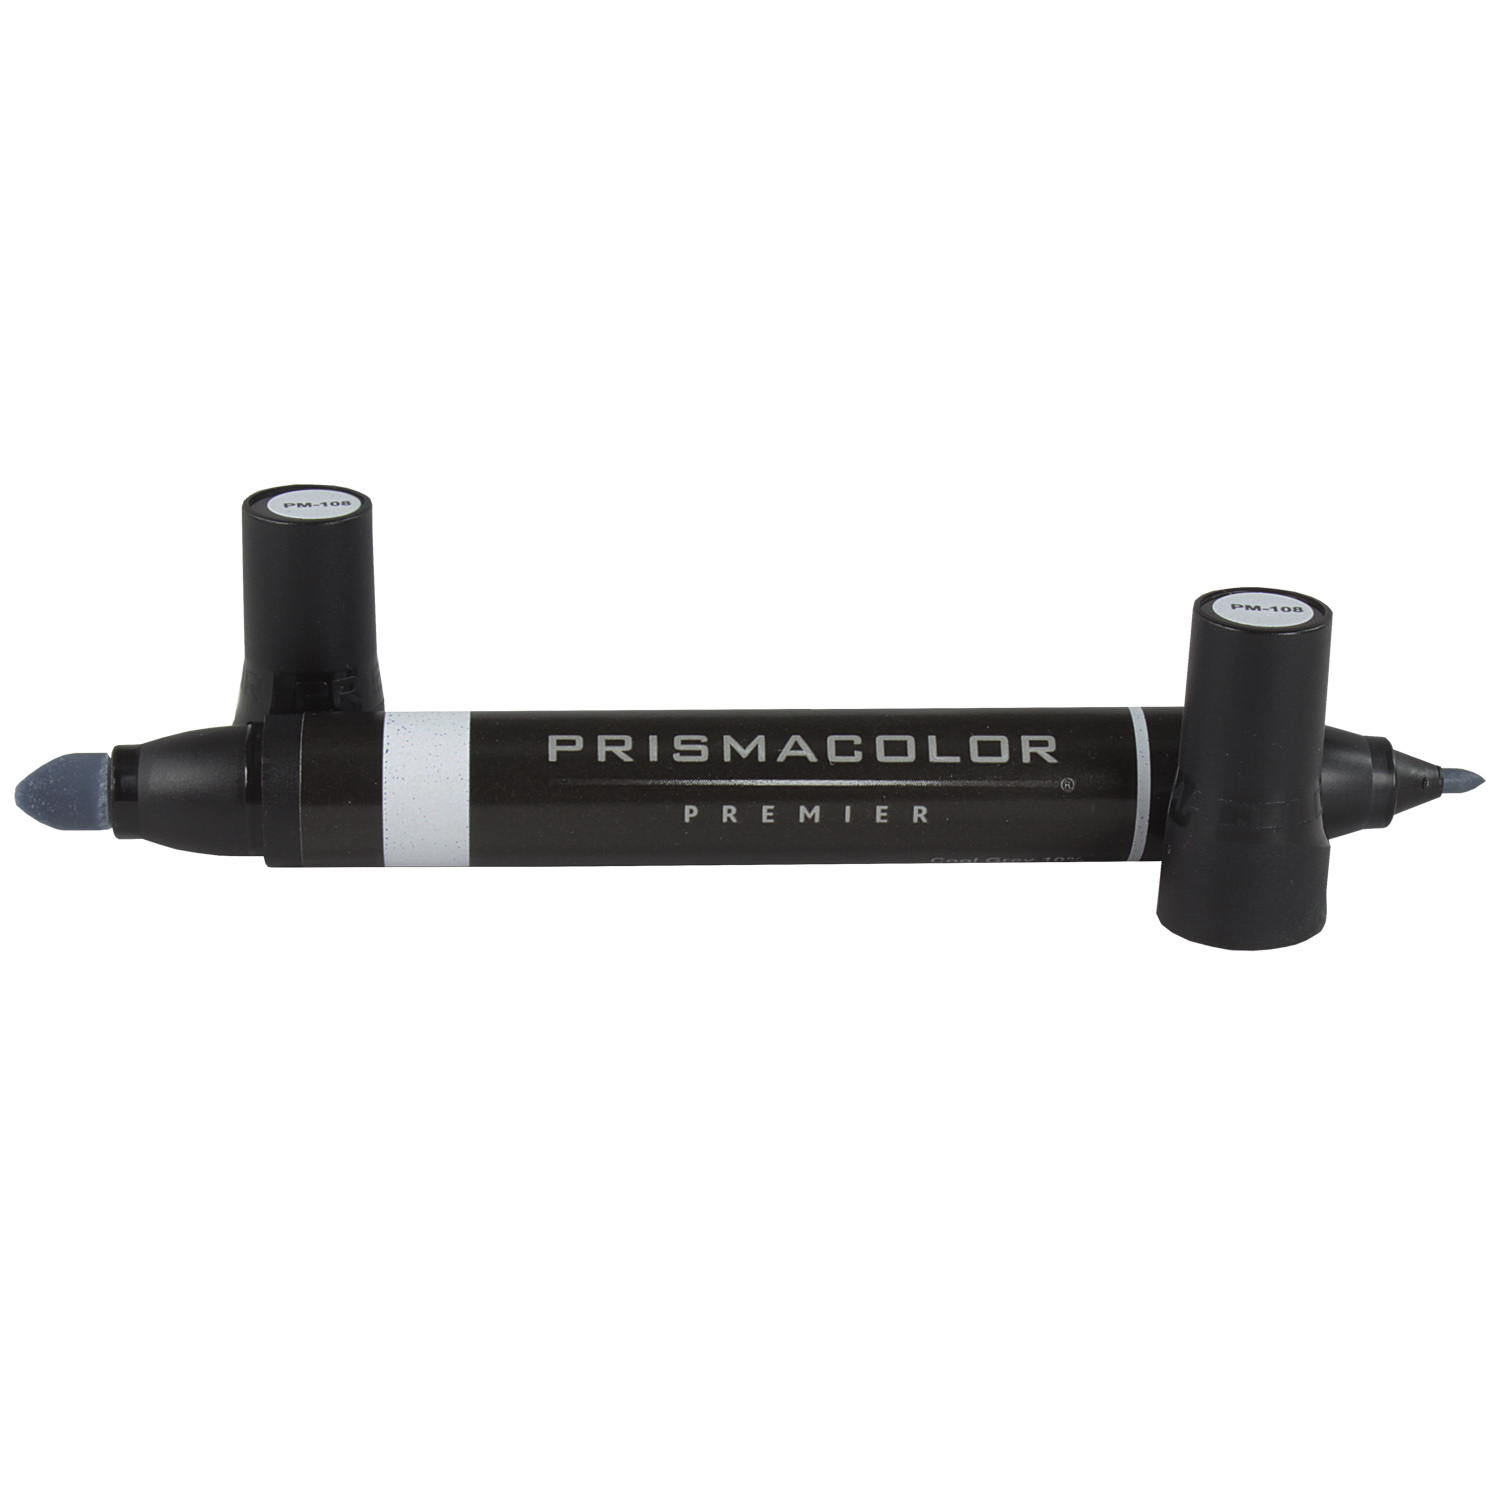 Marcador en base alcohol Prismacolor Premier